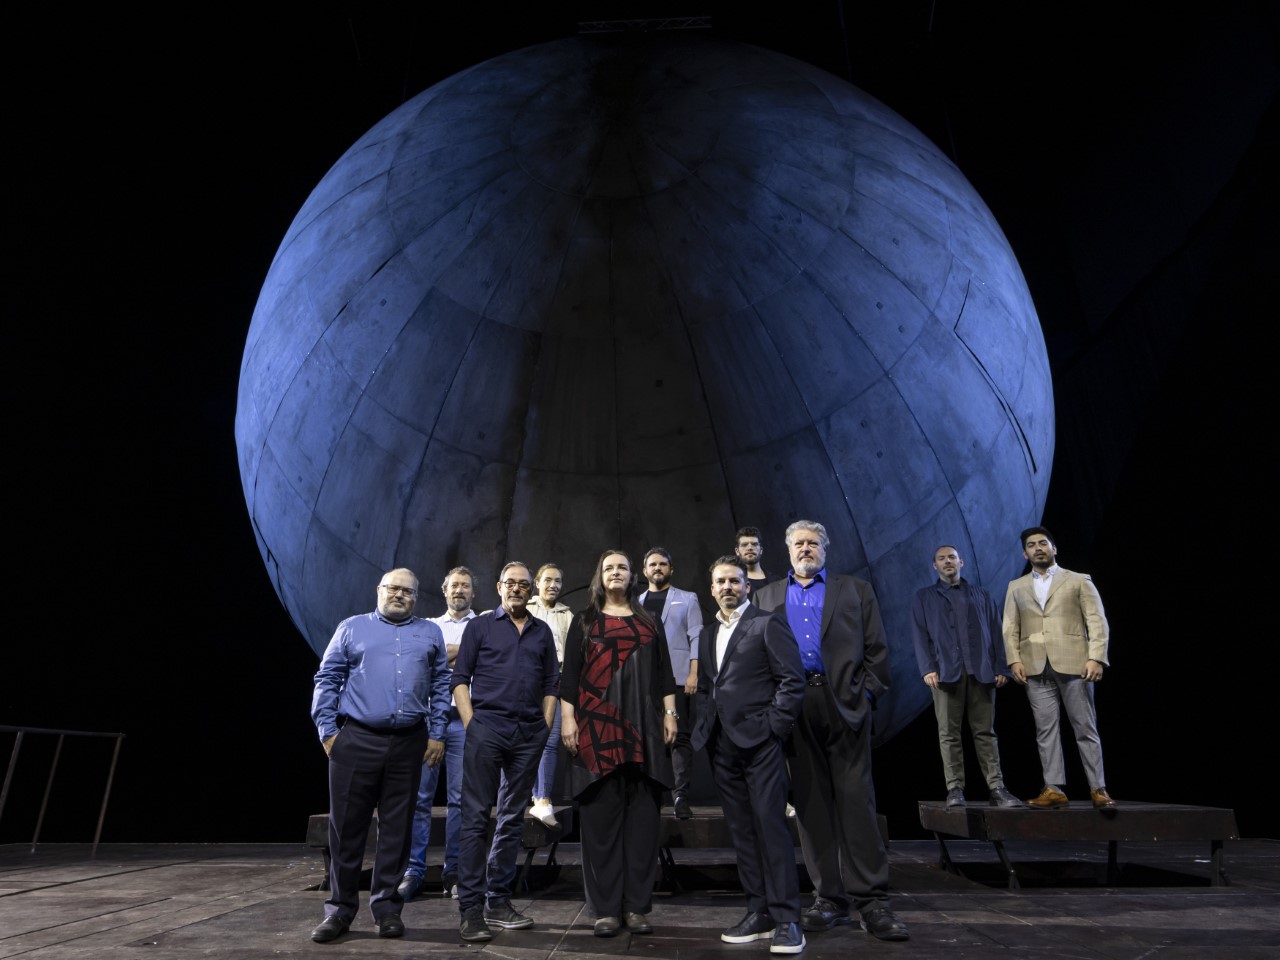 Wagner regresa a Les Arts tras 10 años de ausencia con el estreno de ‘Tristan und Isolde’